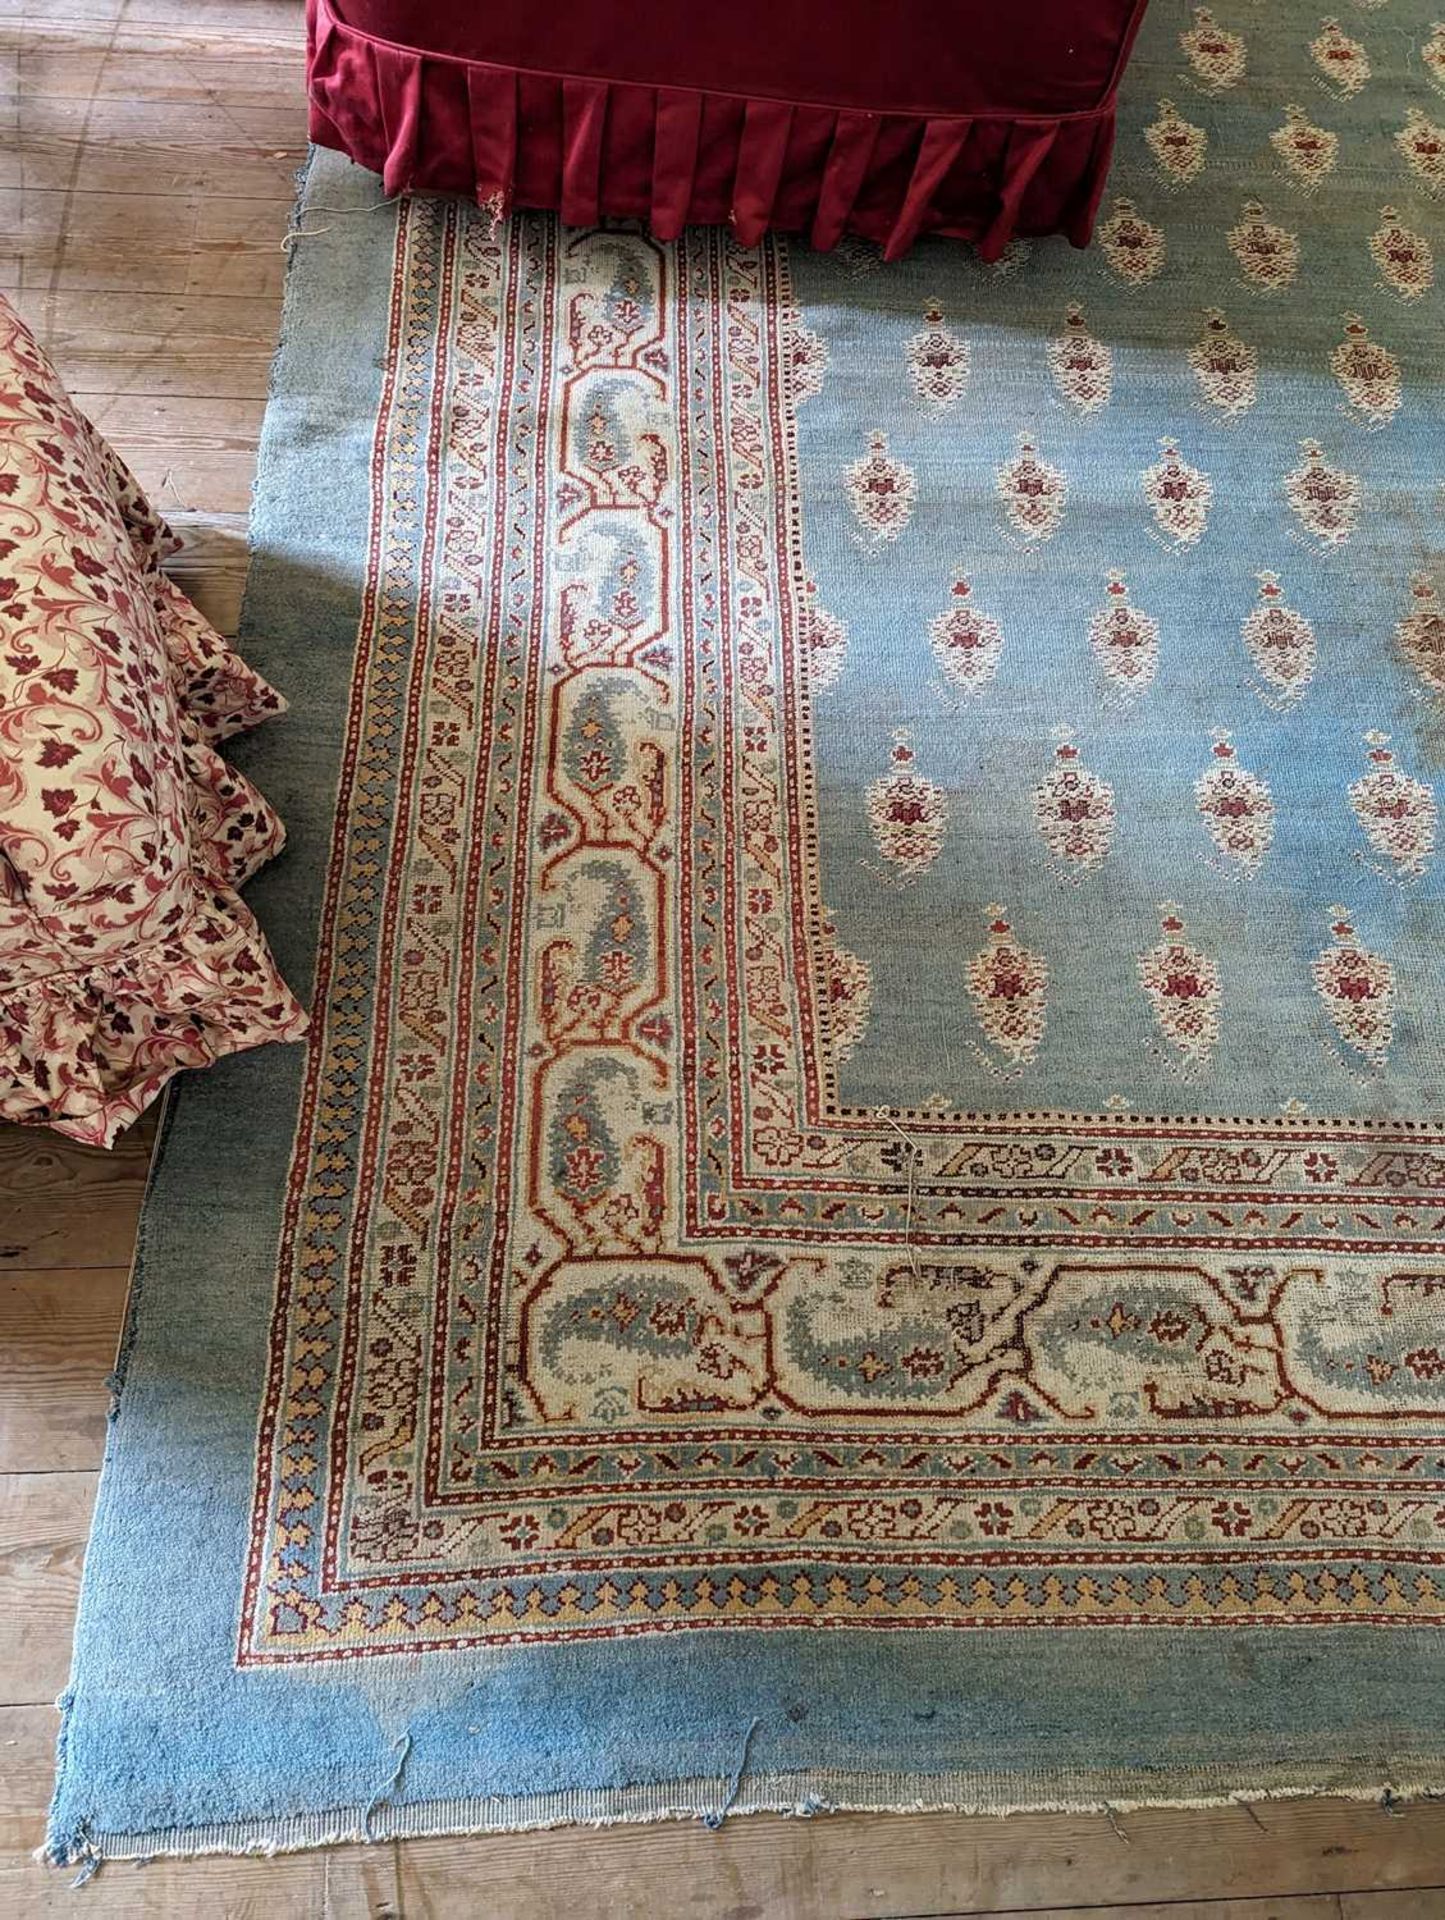 ☘ A large blue Amritsar carpet, - Image 25 of 38